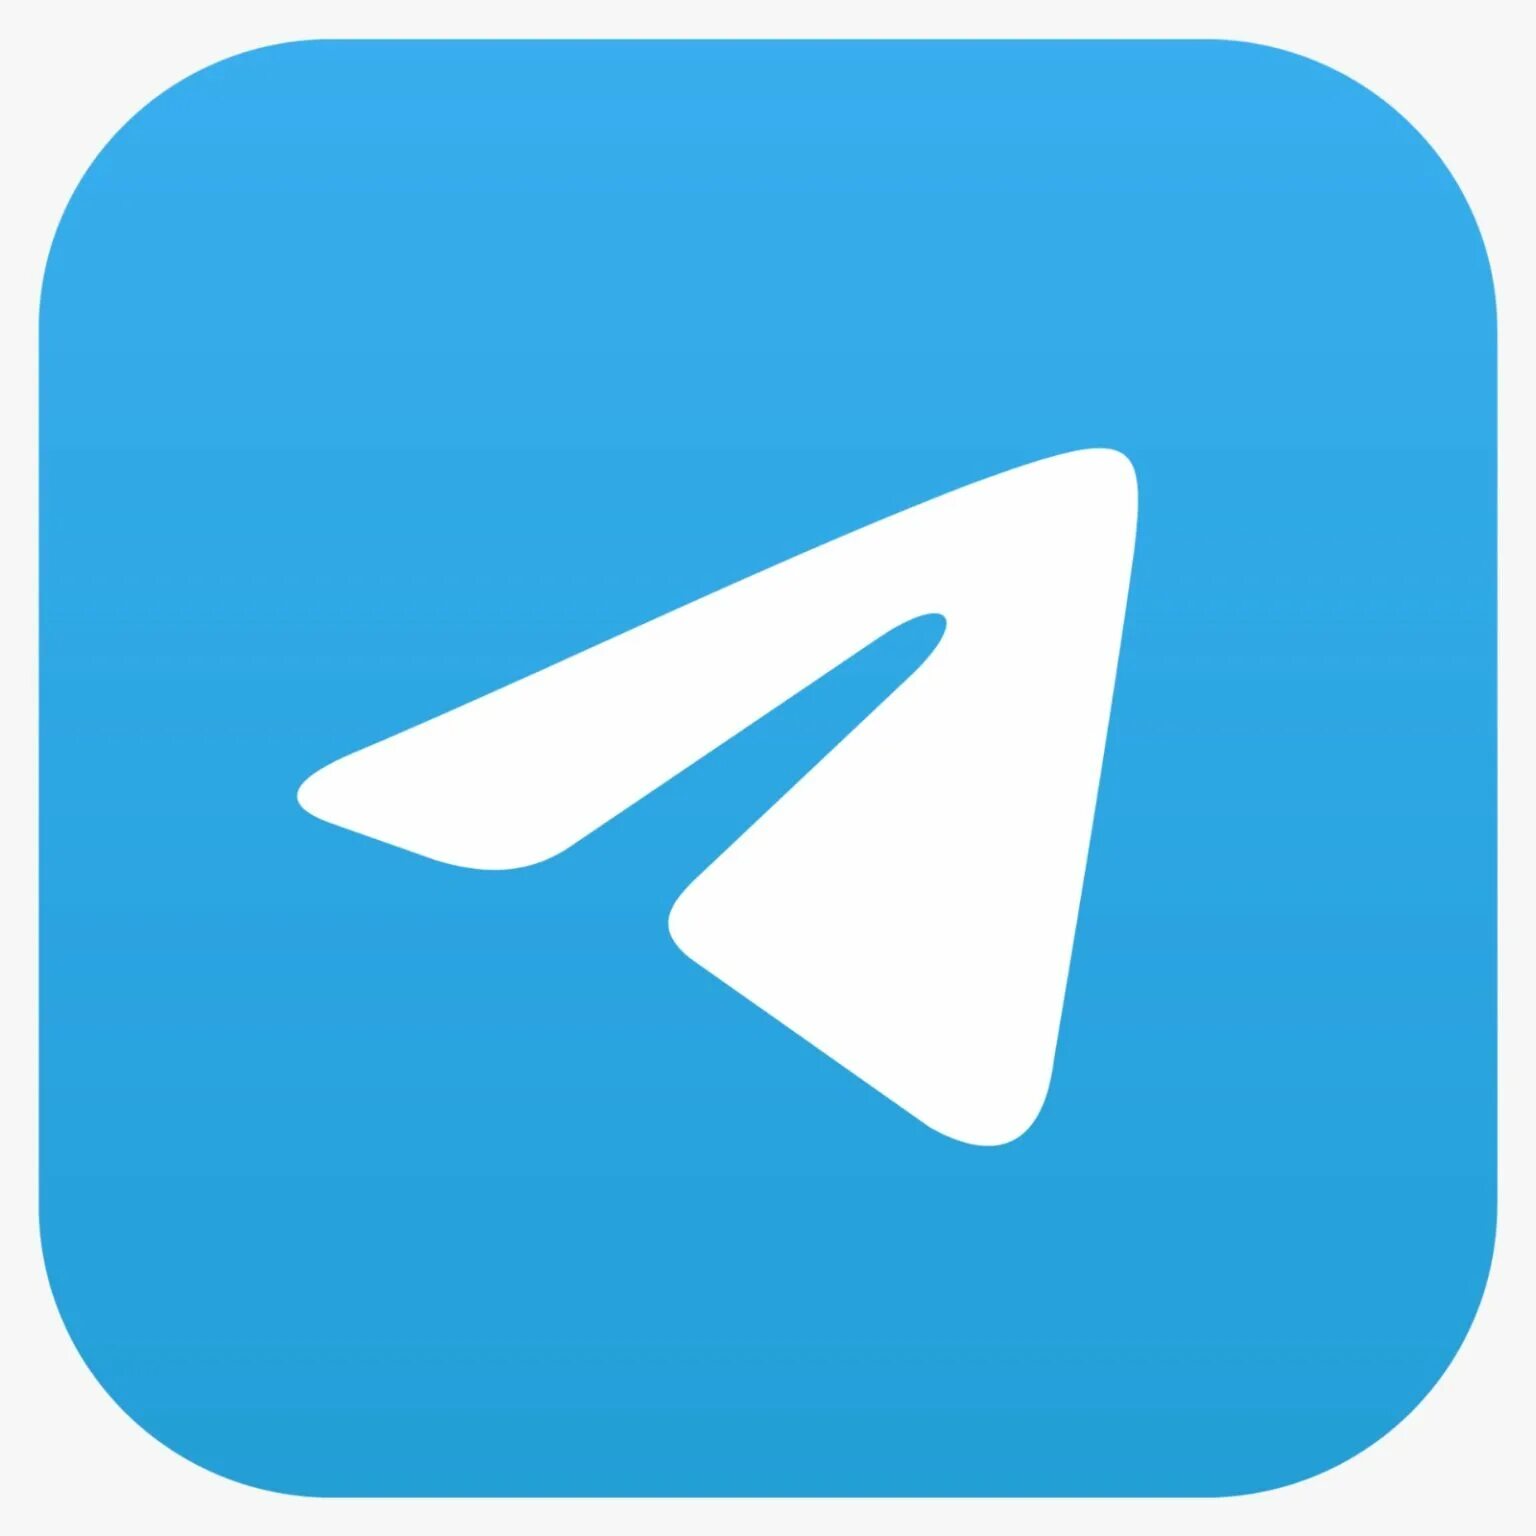 Мен телеграм. Значок Telegram. Telegram logo PNG. Значок телеграмм вектор. Телега логотип.